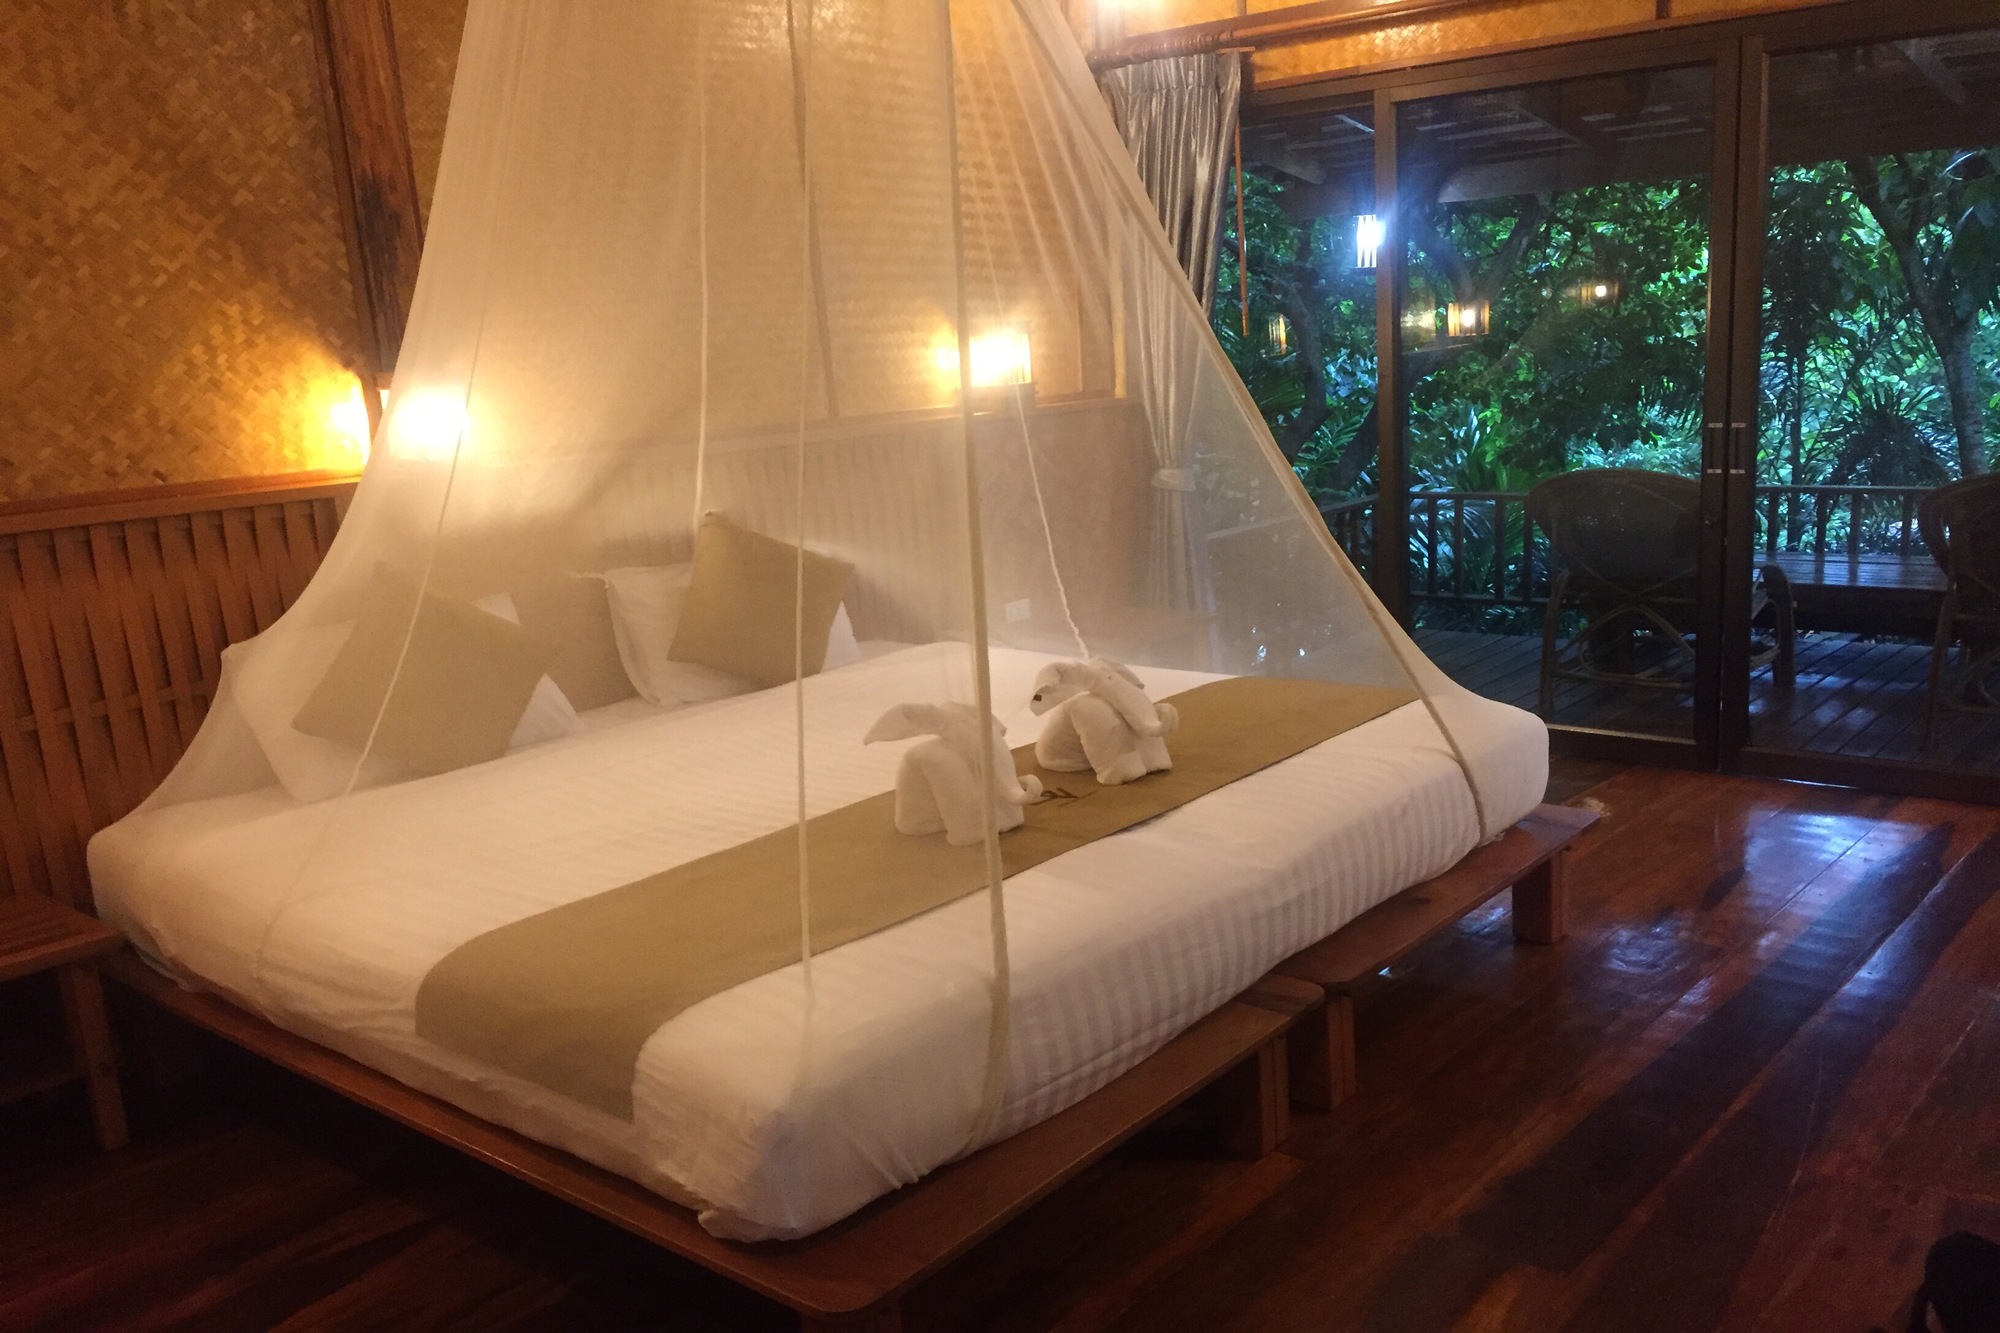 mosquito-courtain-in-thailandia-hotel-RRQH69X_2000x1333